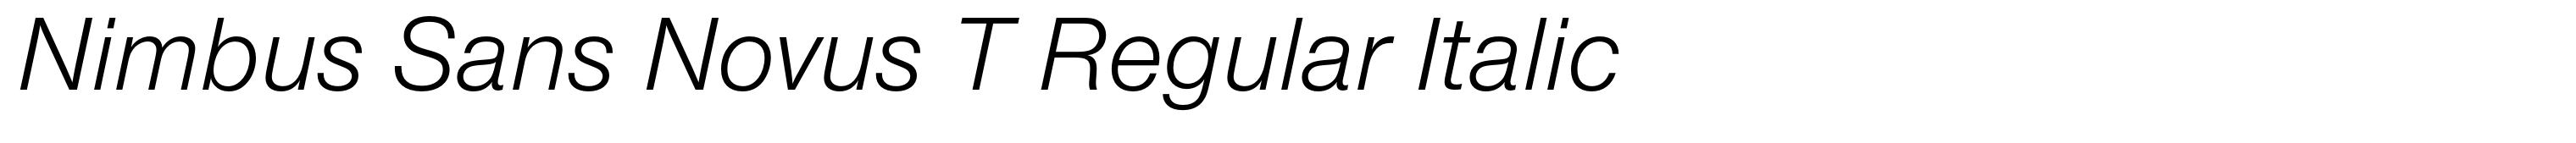 Nimbus Sans Novus T Regular Italic